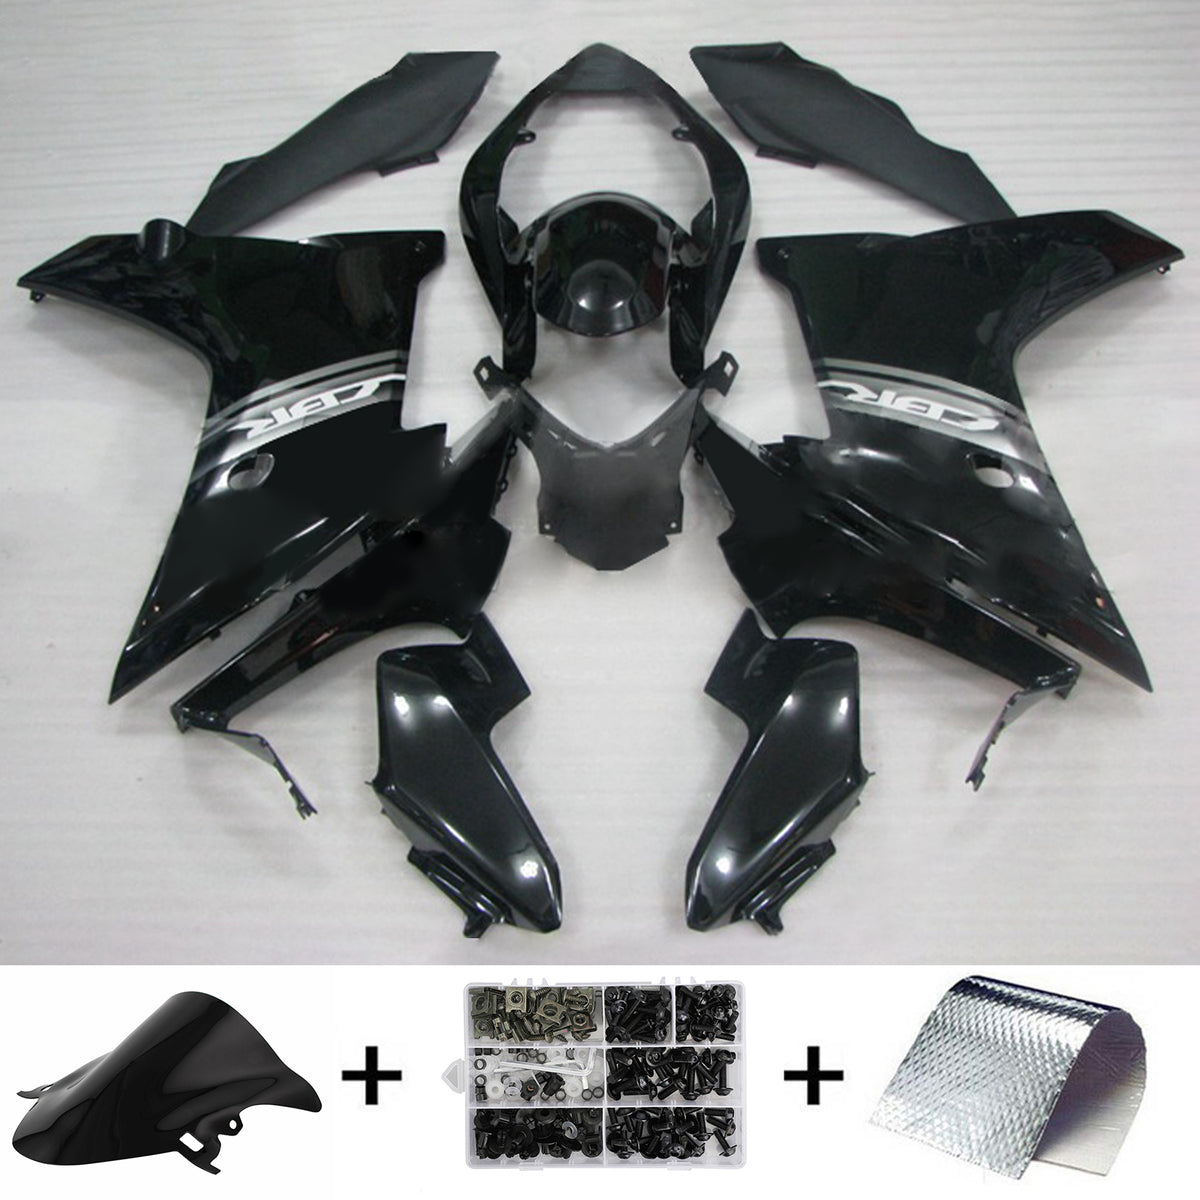 Amotopart 2011–2013 CBR600F Honda schwarzes Verkleidungsset